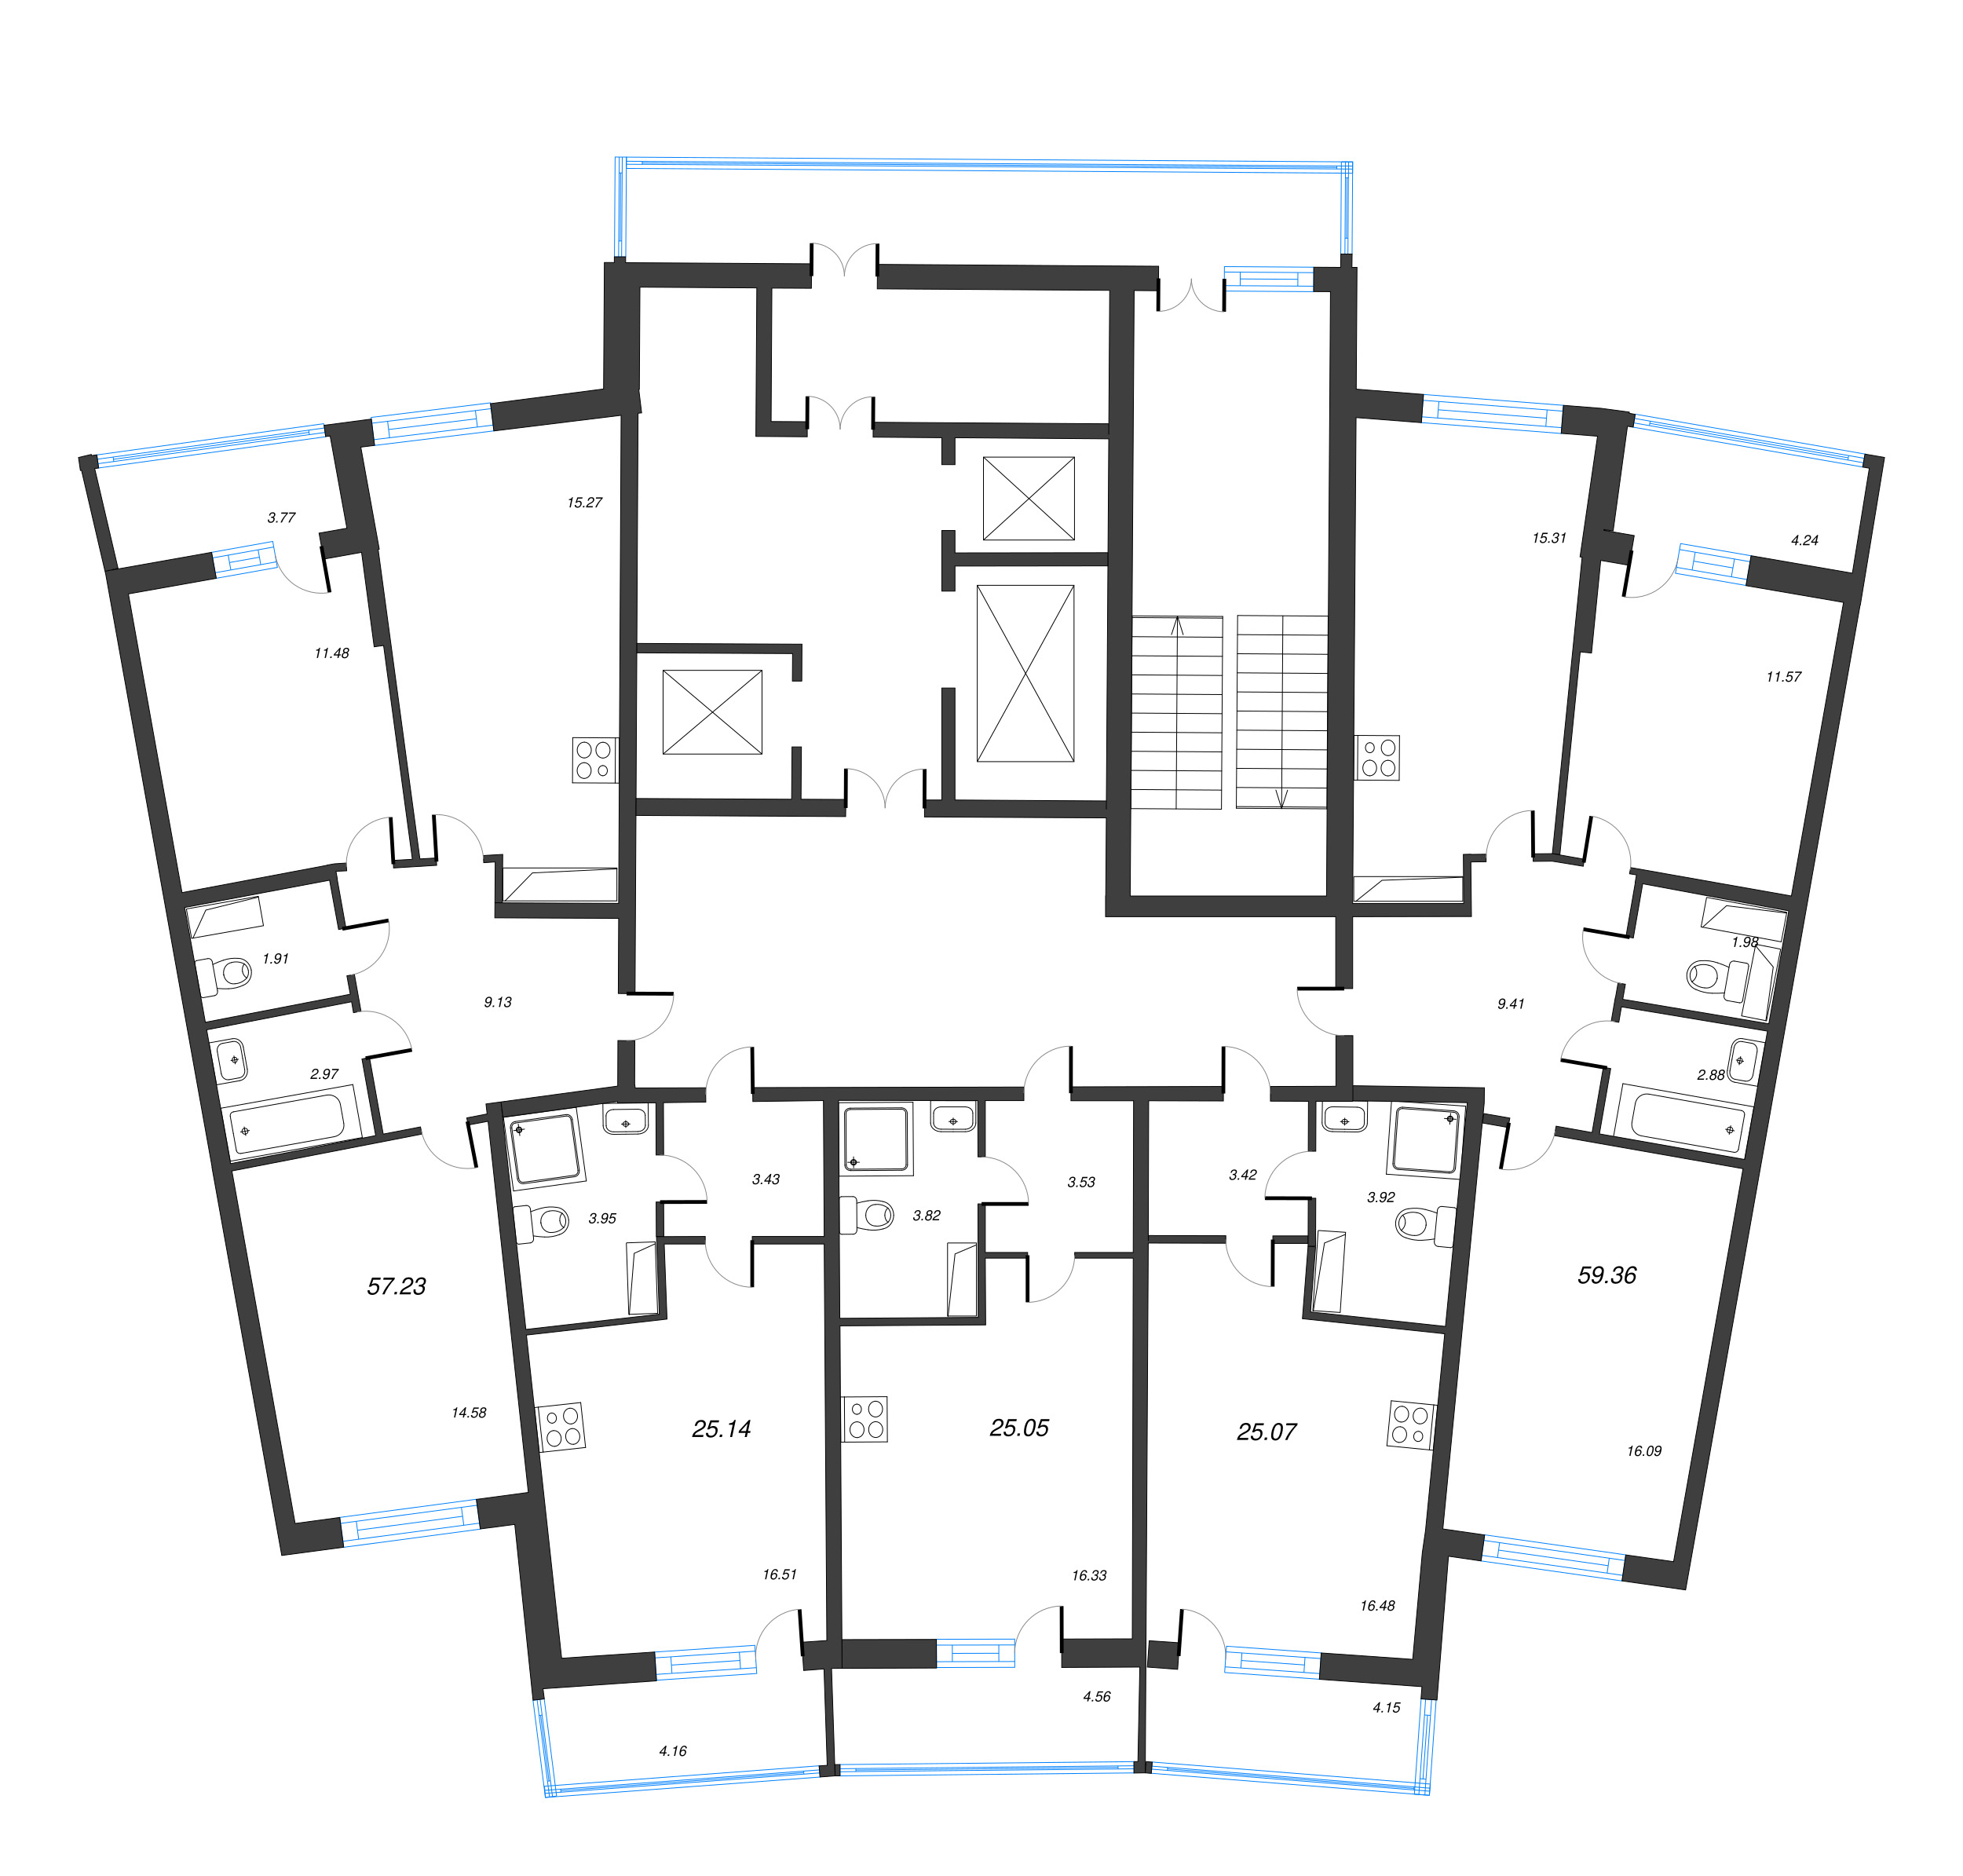 Квартира-студия, 25.05 м² в ЖК "Дом Левитан" - планировка этажа